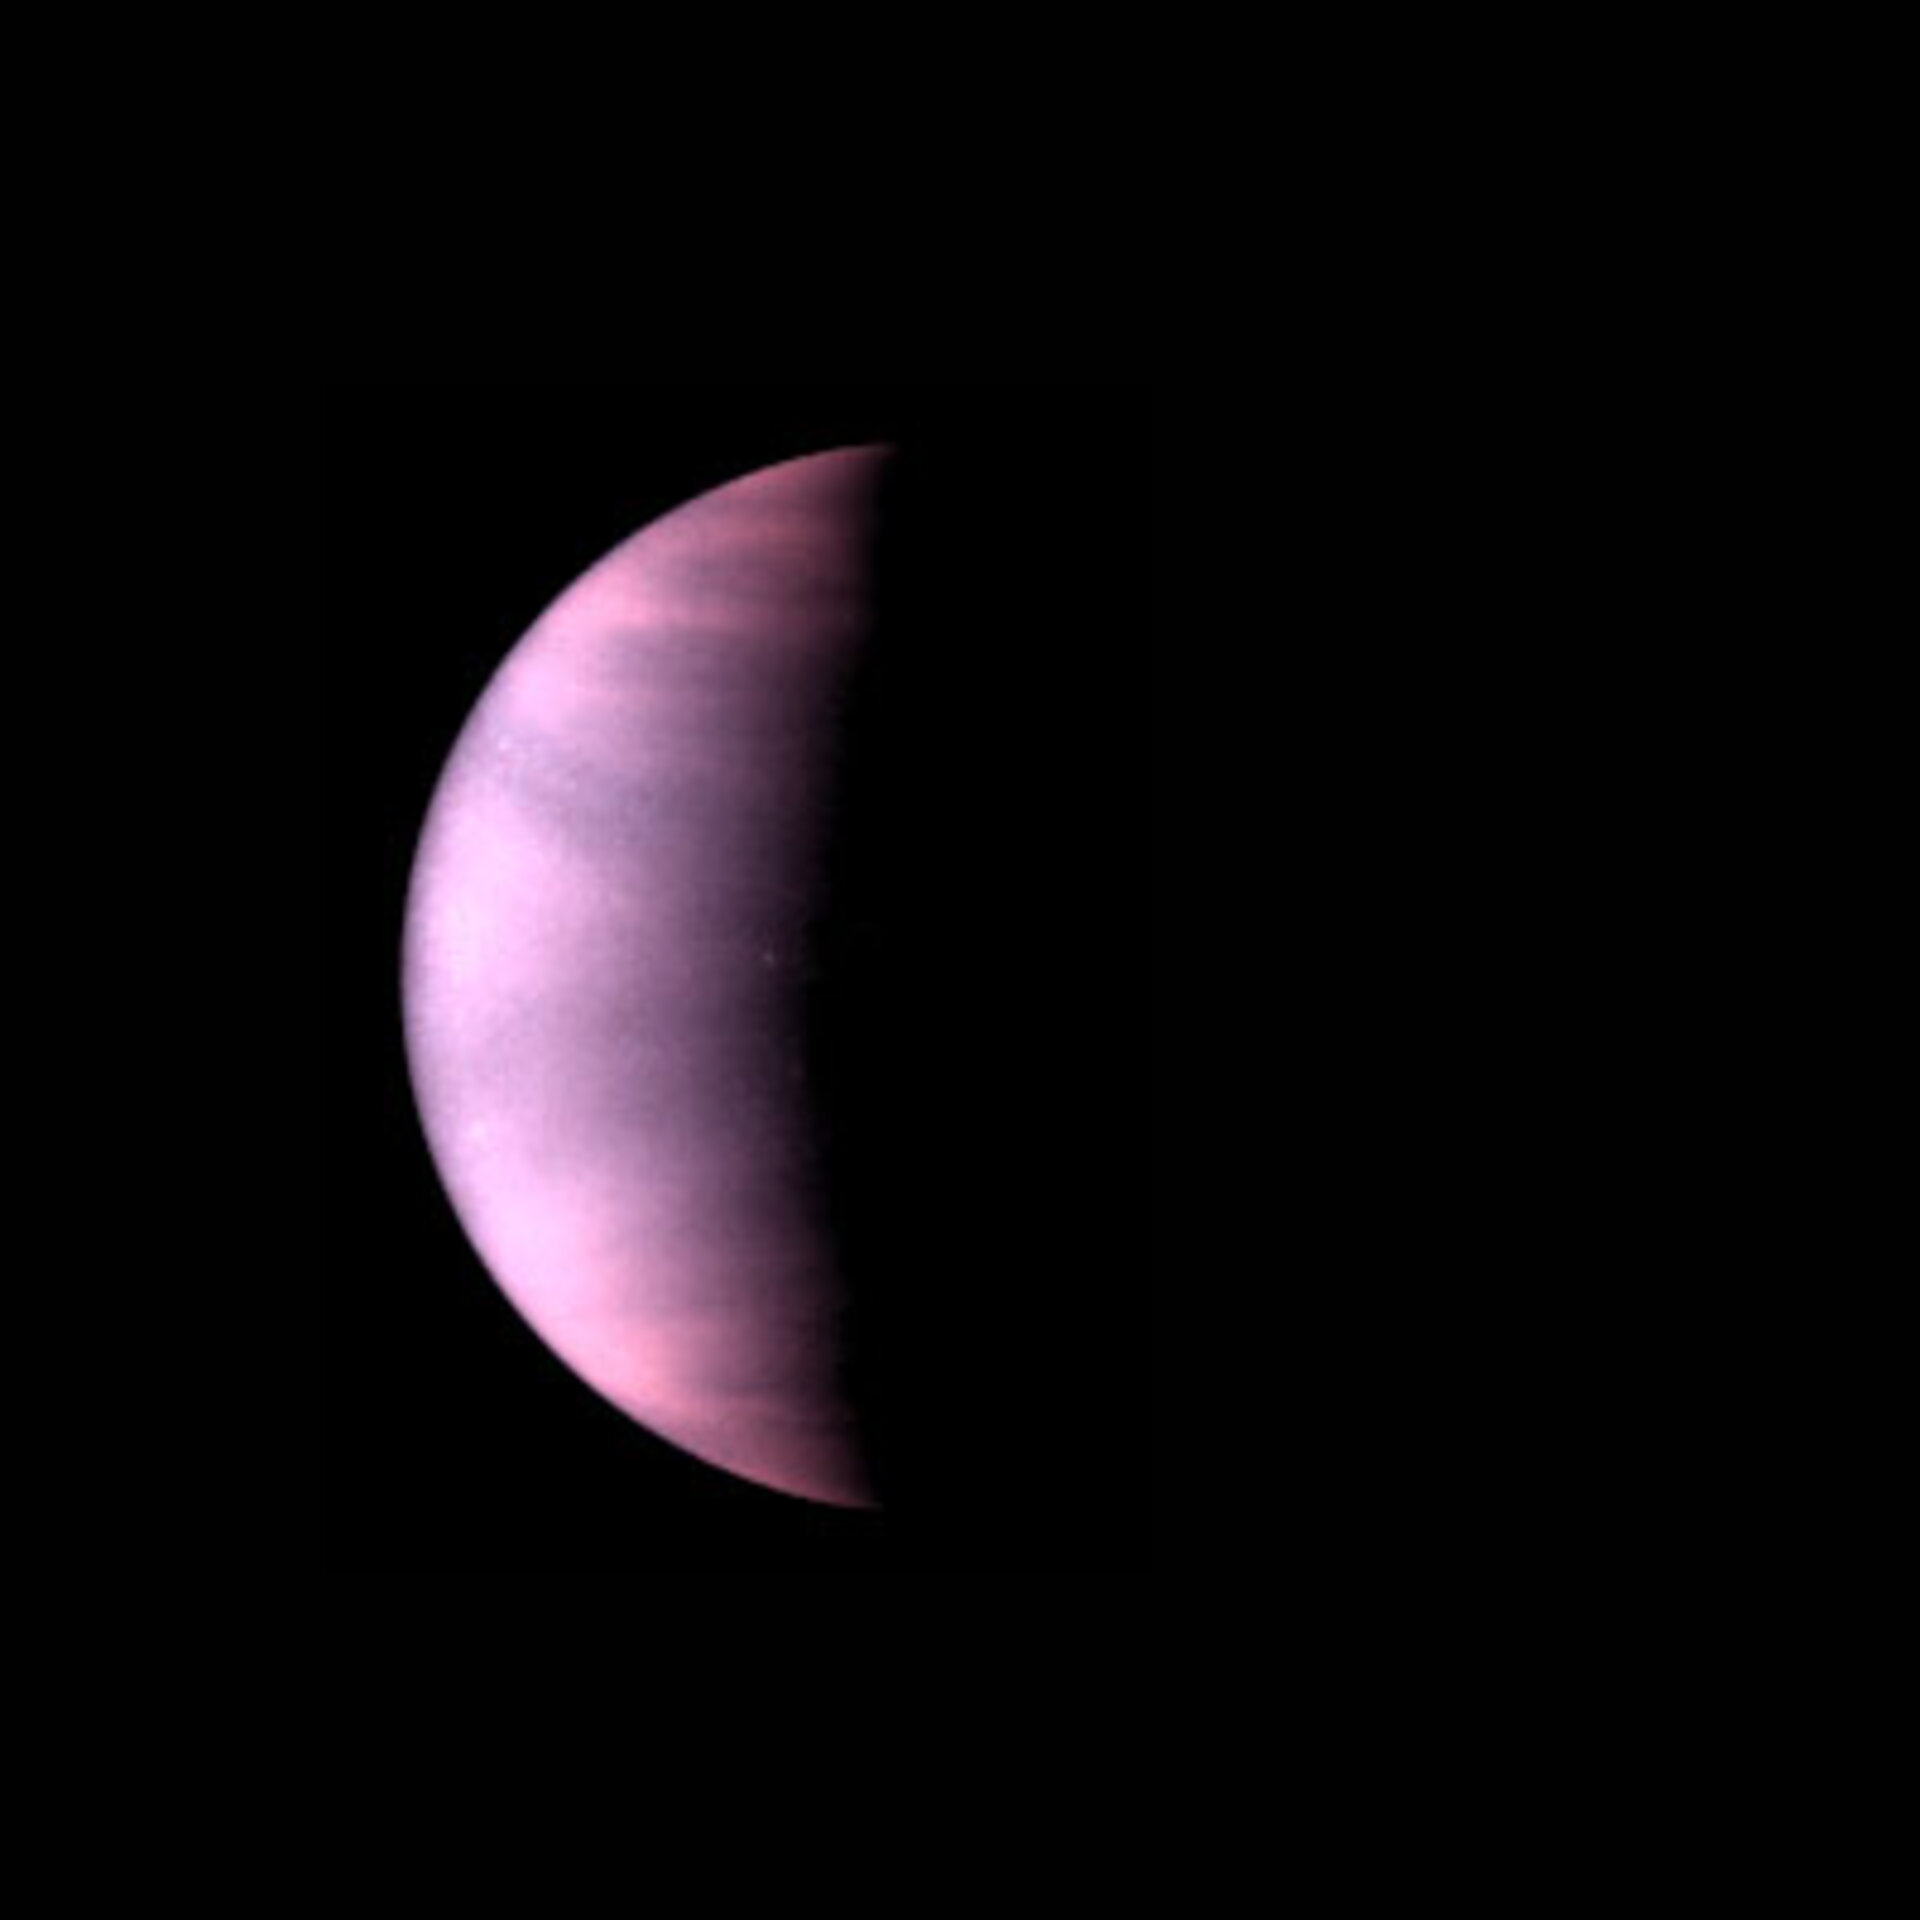 Ultraviolet view of Venus